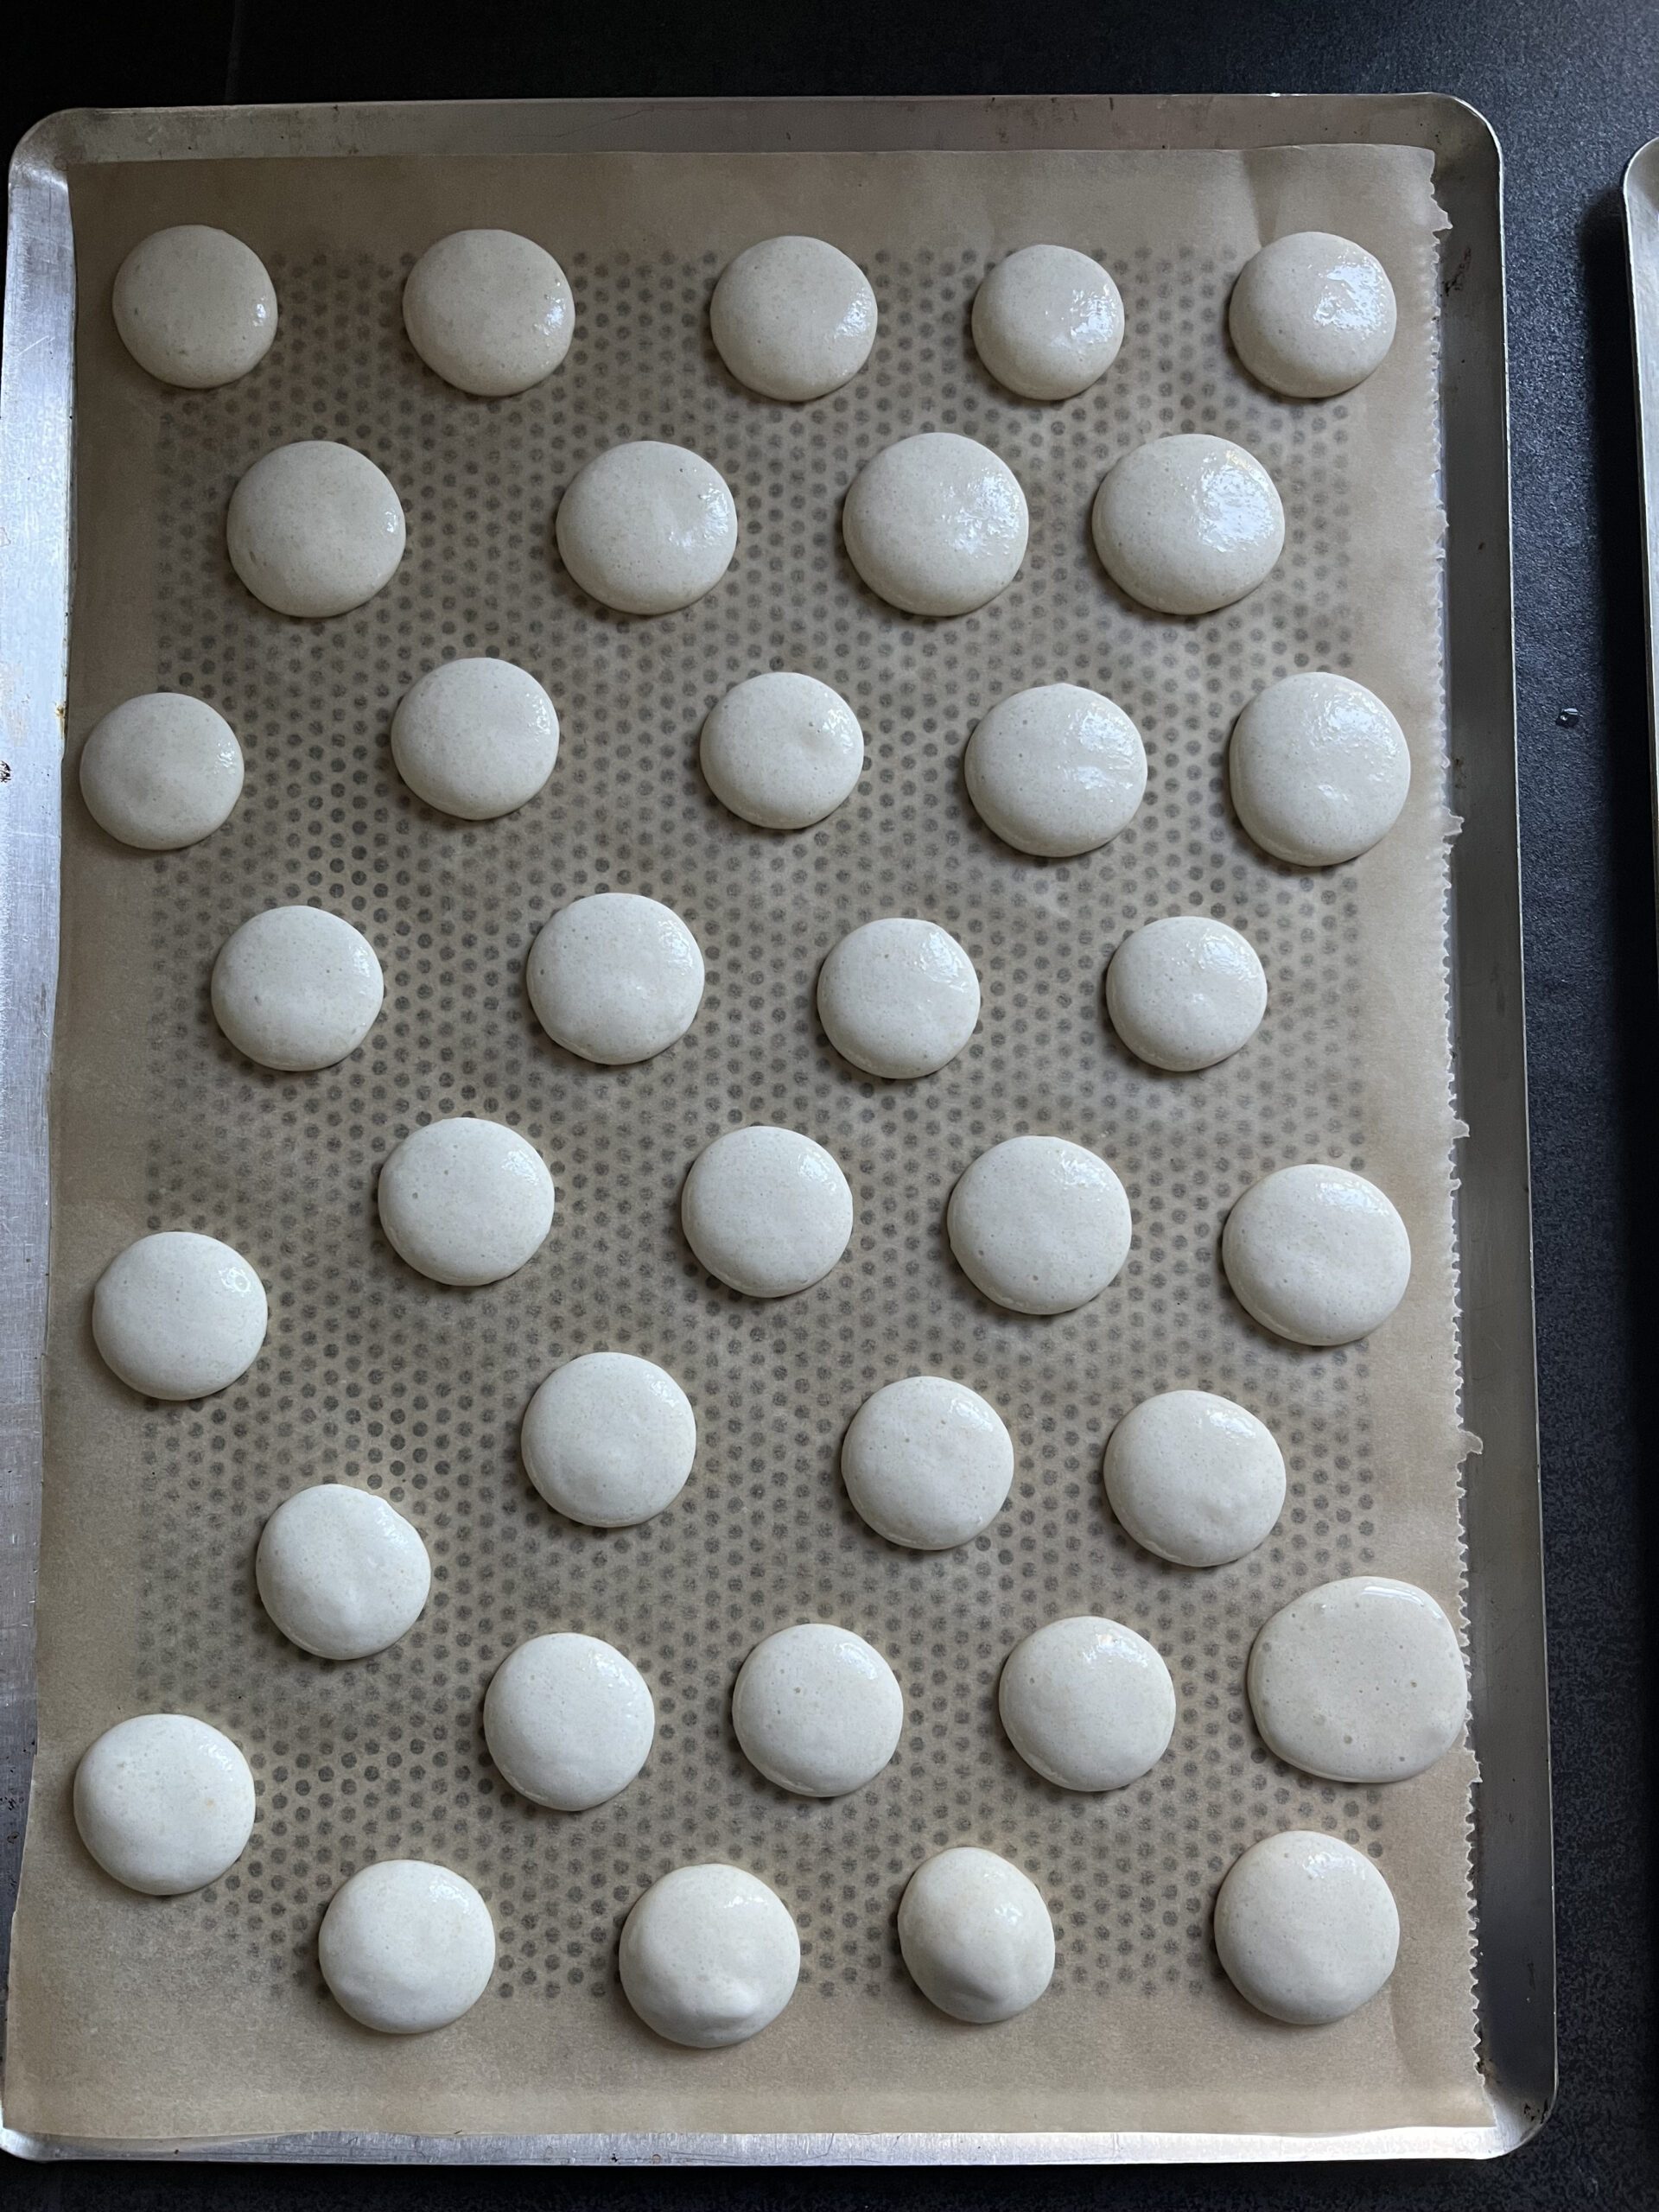 Kleine runde Macarons auf ein mit Backpapier belegtes Lochblech spritzen, sie dann sofort mit Wasser besprühen